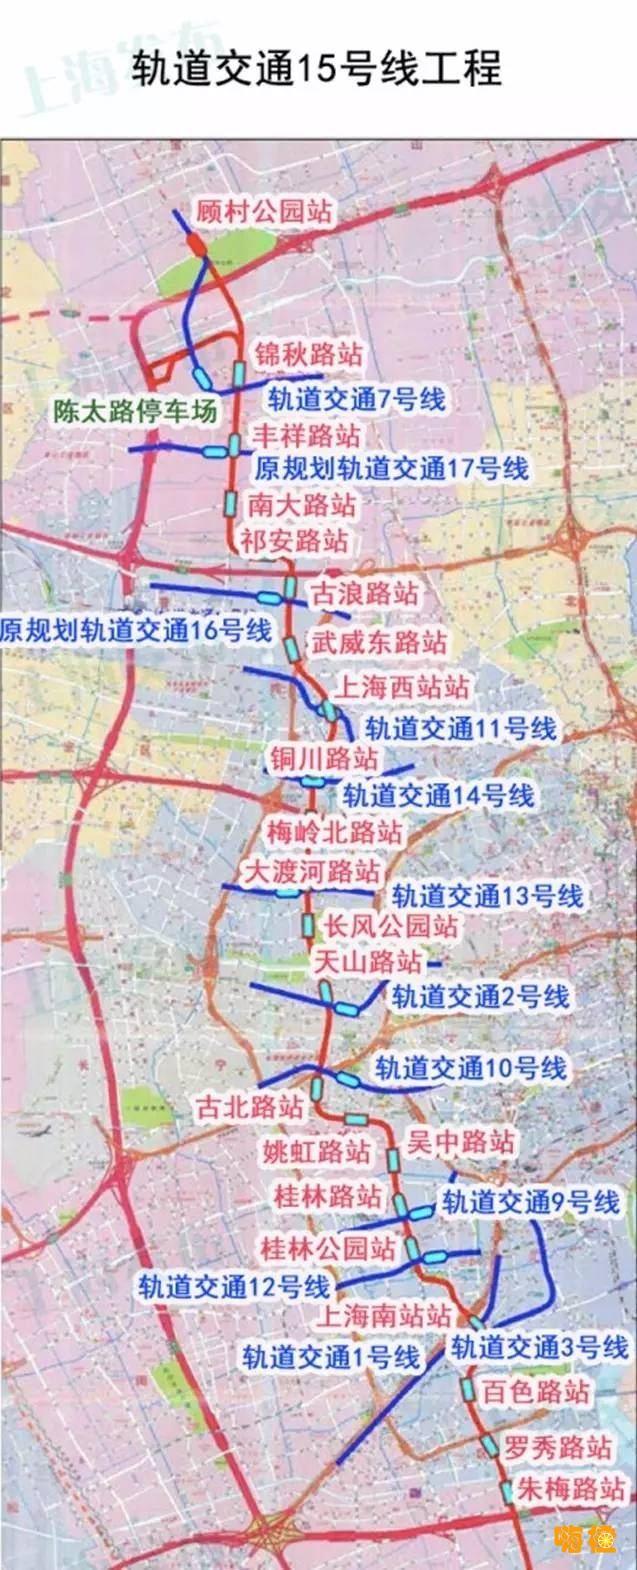 上海地铁15号线:普陀区～长宁区～徐汇区～闵行区～紫竹高新区站